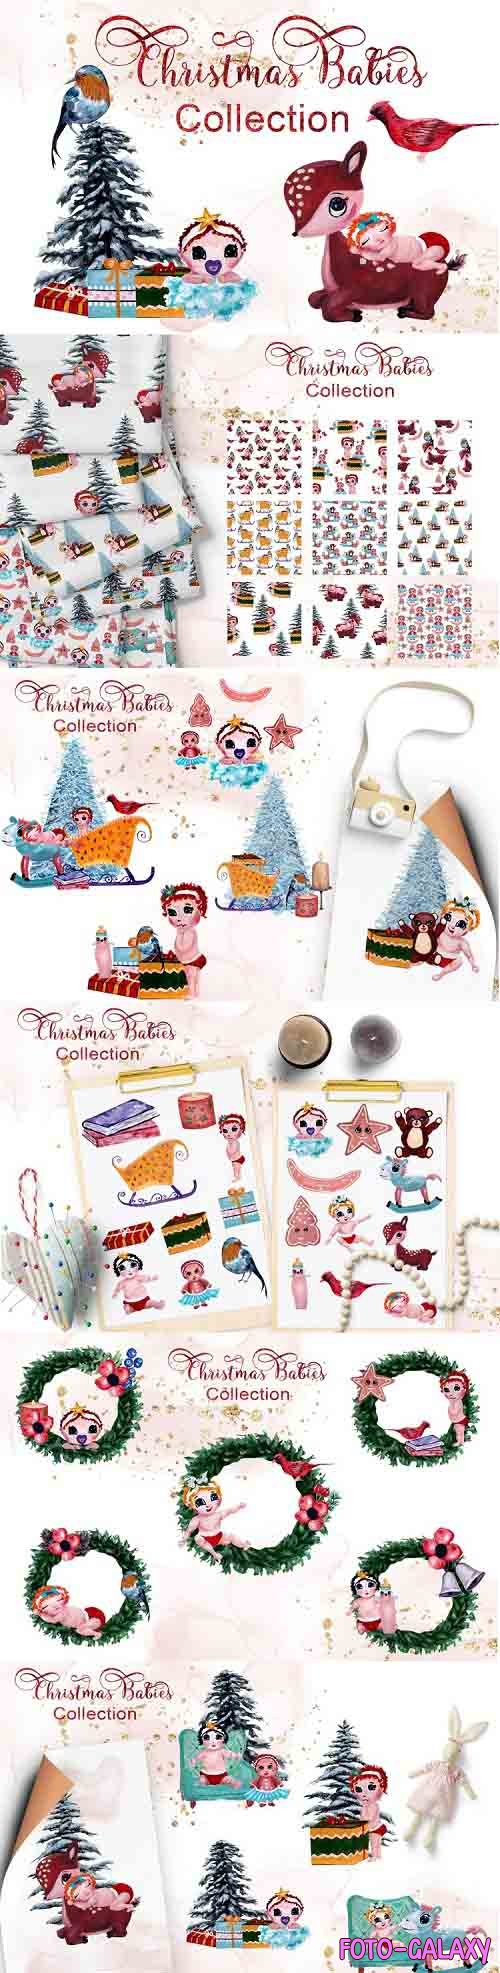 Christmas Babies Collection - 1055651